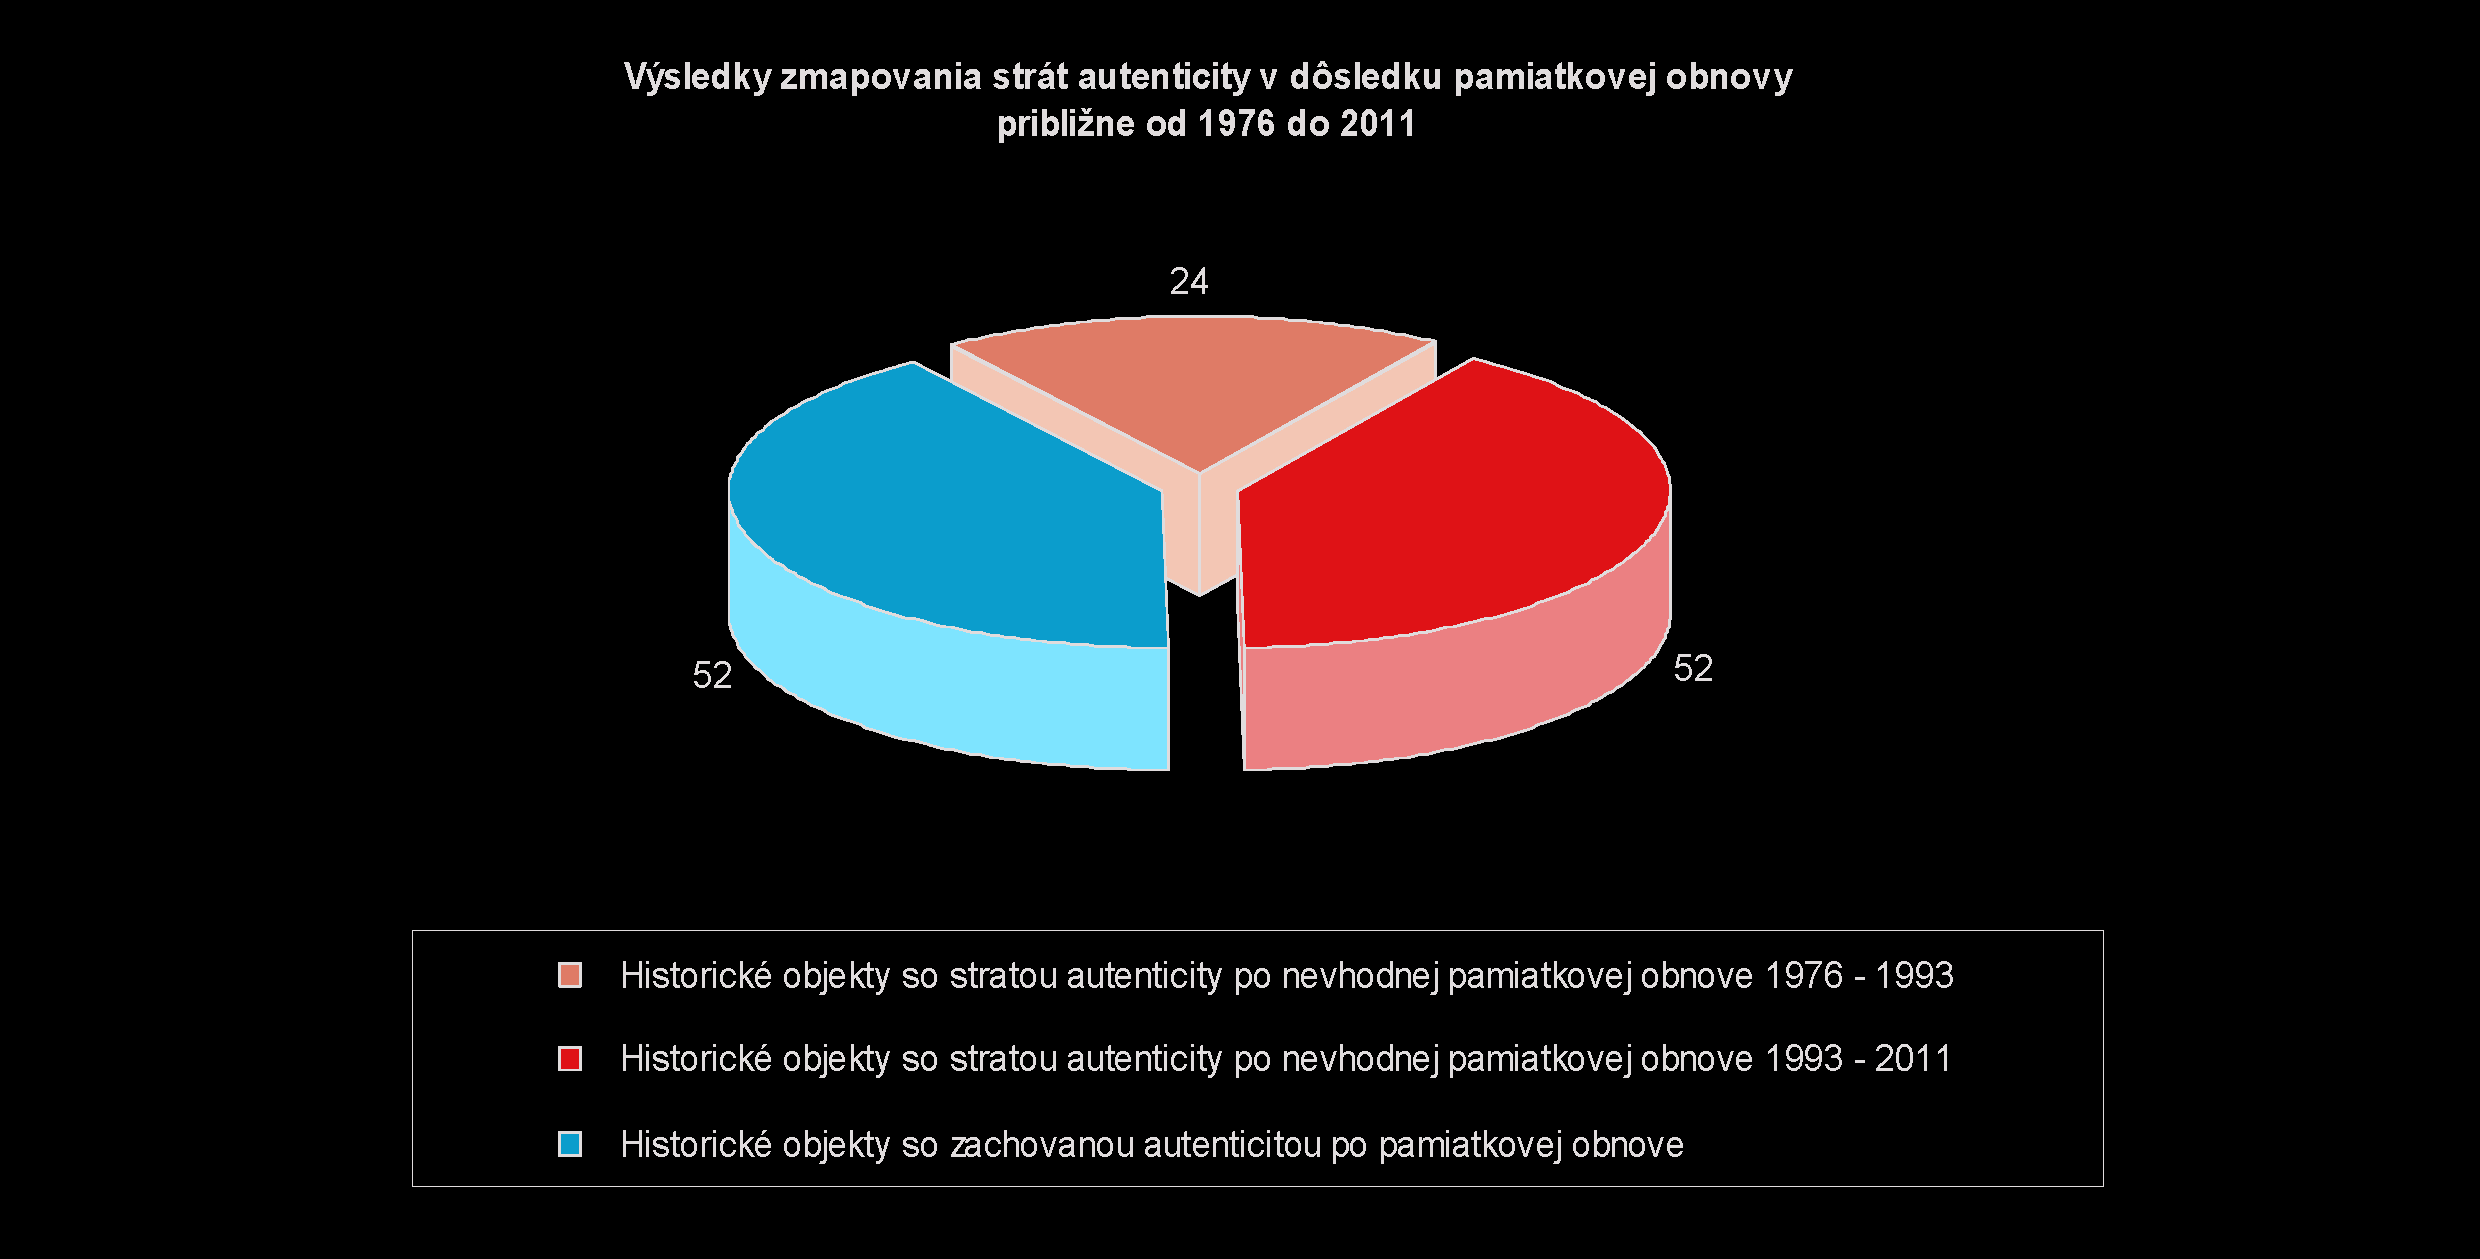 Výsledky zmapovania strát autenticity v dôsledku pamiatkovej obnovy približne od 1976 do 2011.